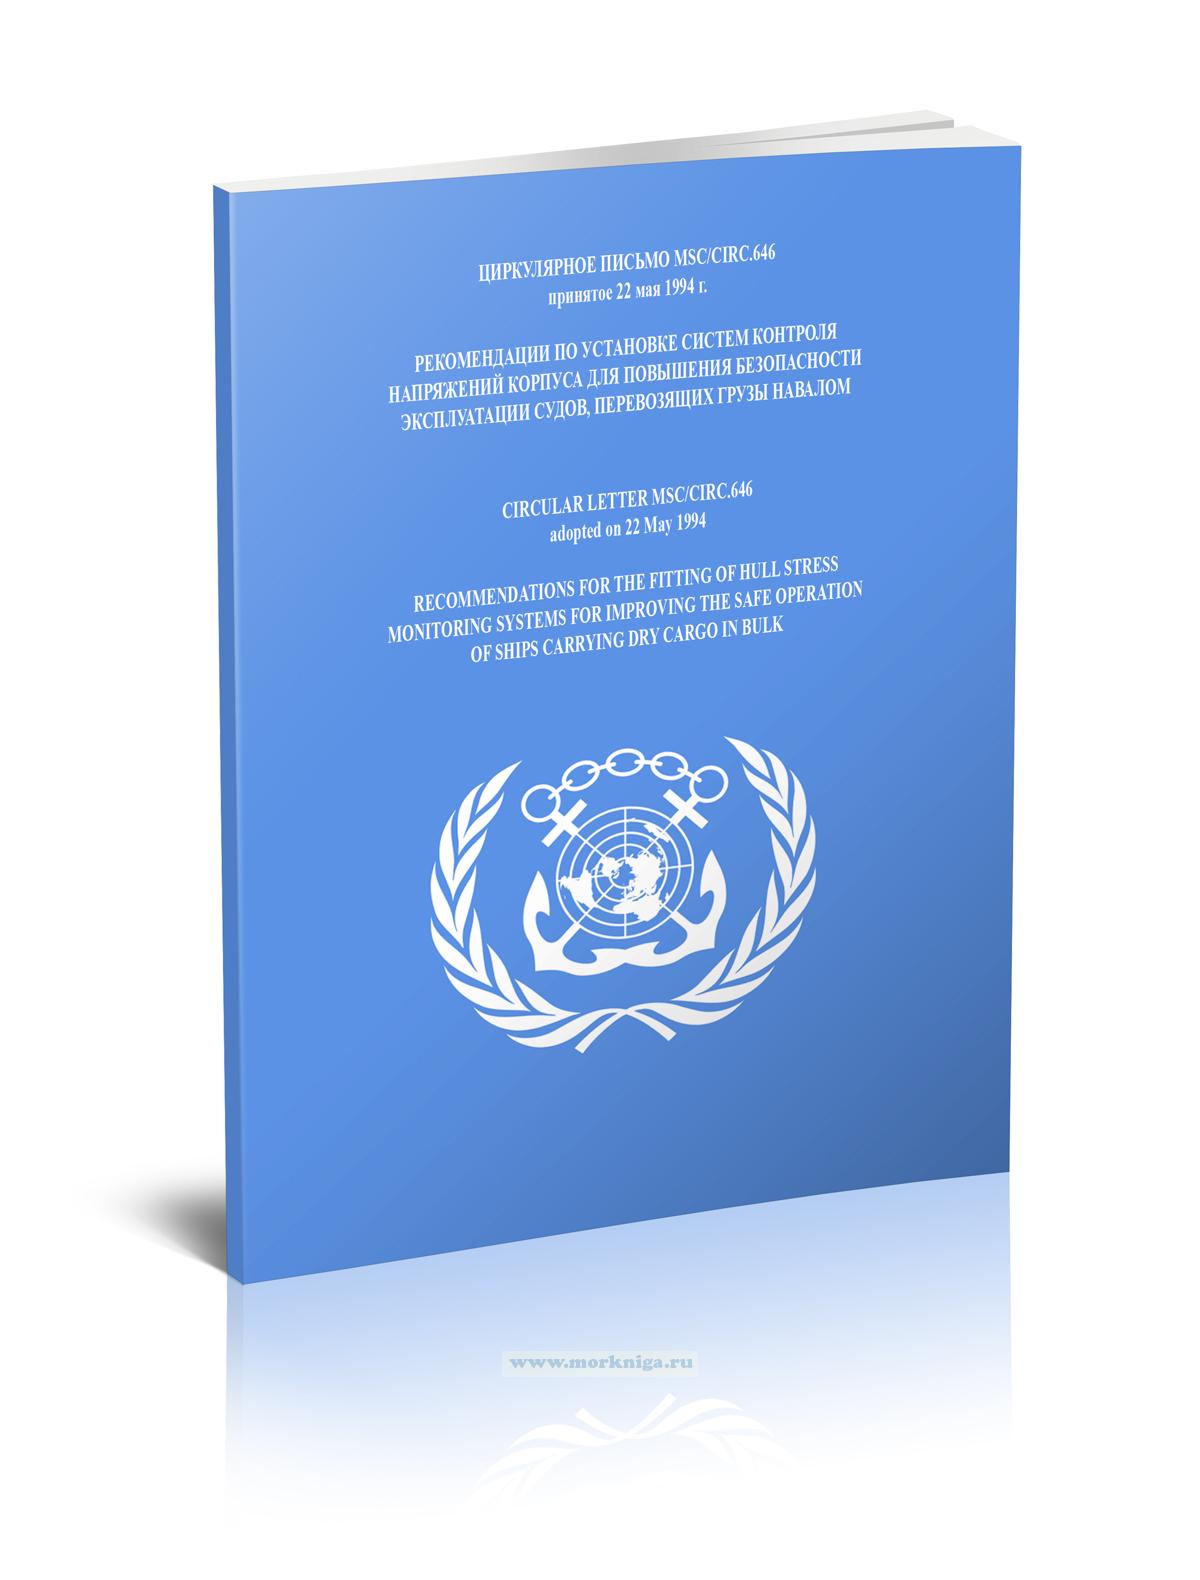 Циркулярное письмо MSC/Circ.646 Рекомендации по установке систем контроля напряжений корпуса для повышения безопасности эксплуатации судов, перевозящих грузы навалом